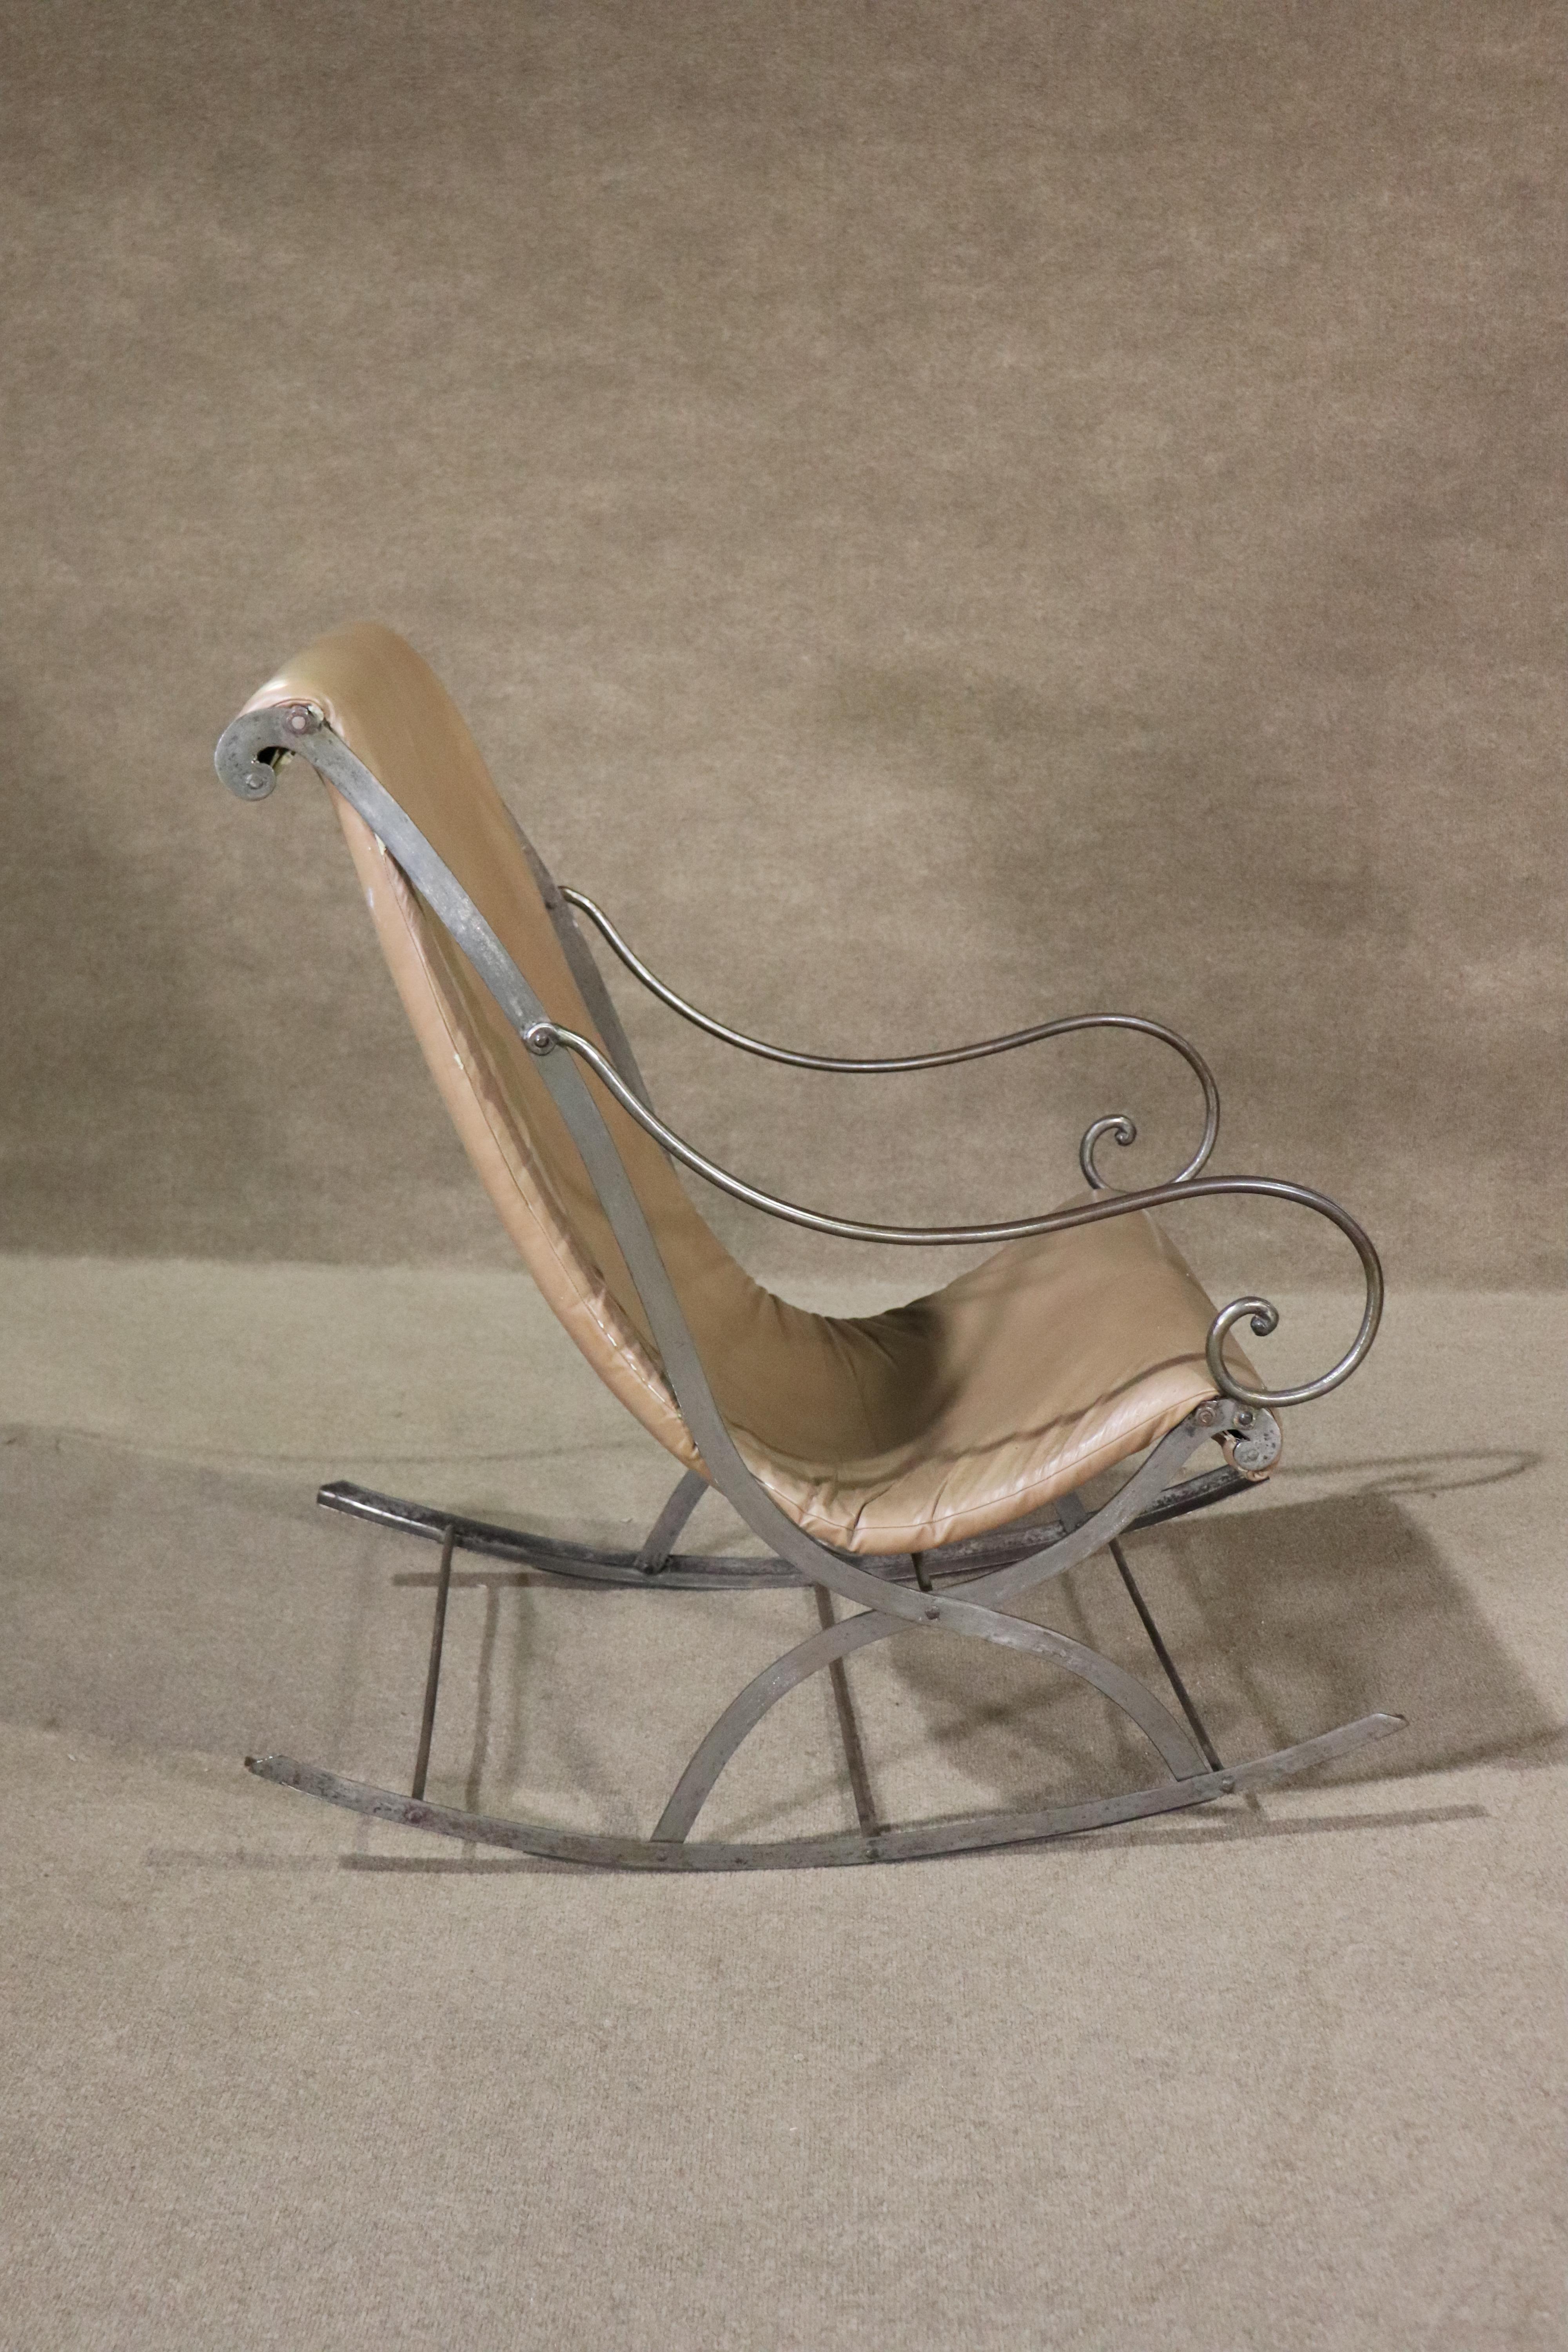 Ce rocking-chair du milieu du siècle est constitué d'un cadre métallique solide et d'une assise incurvée en vinyle. 
Veuillez confirmer le lieu NY ou NJ